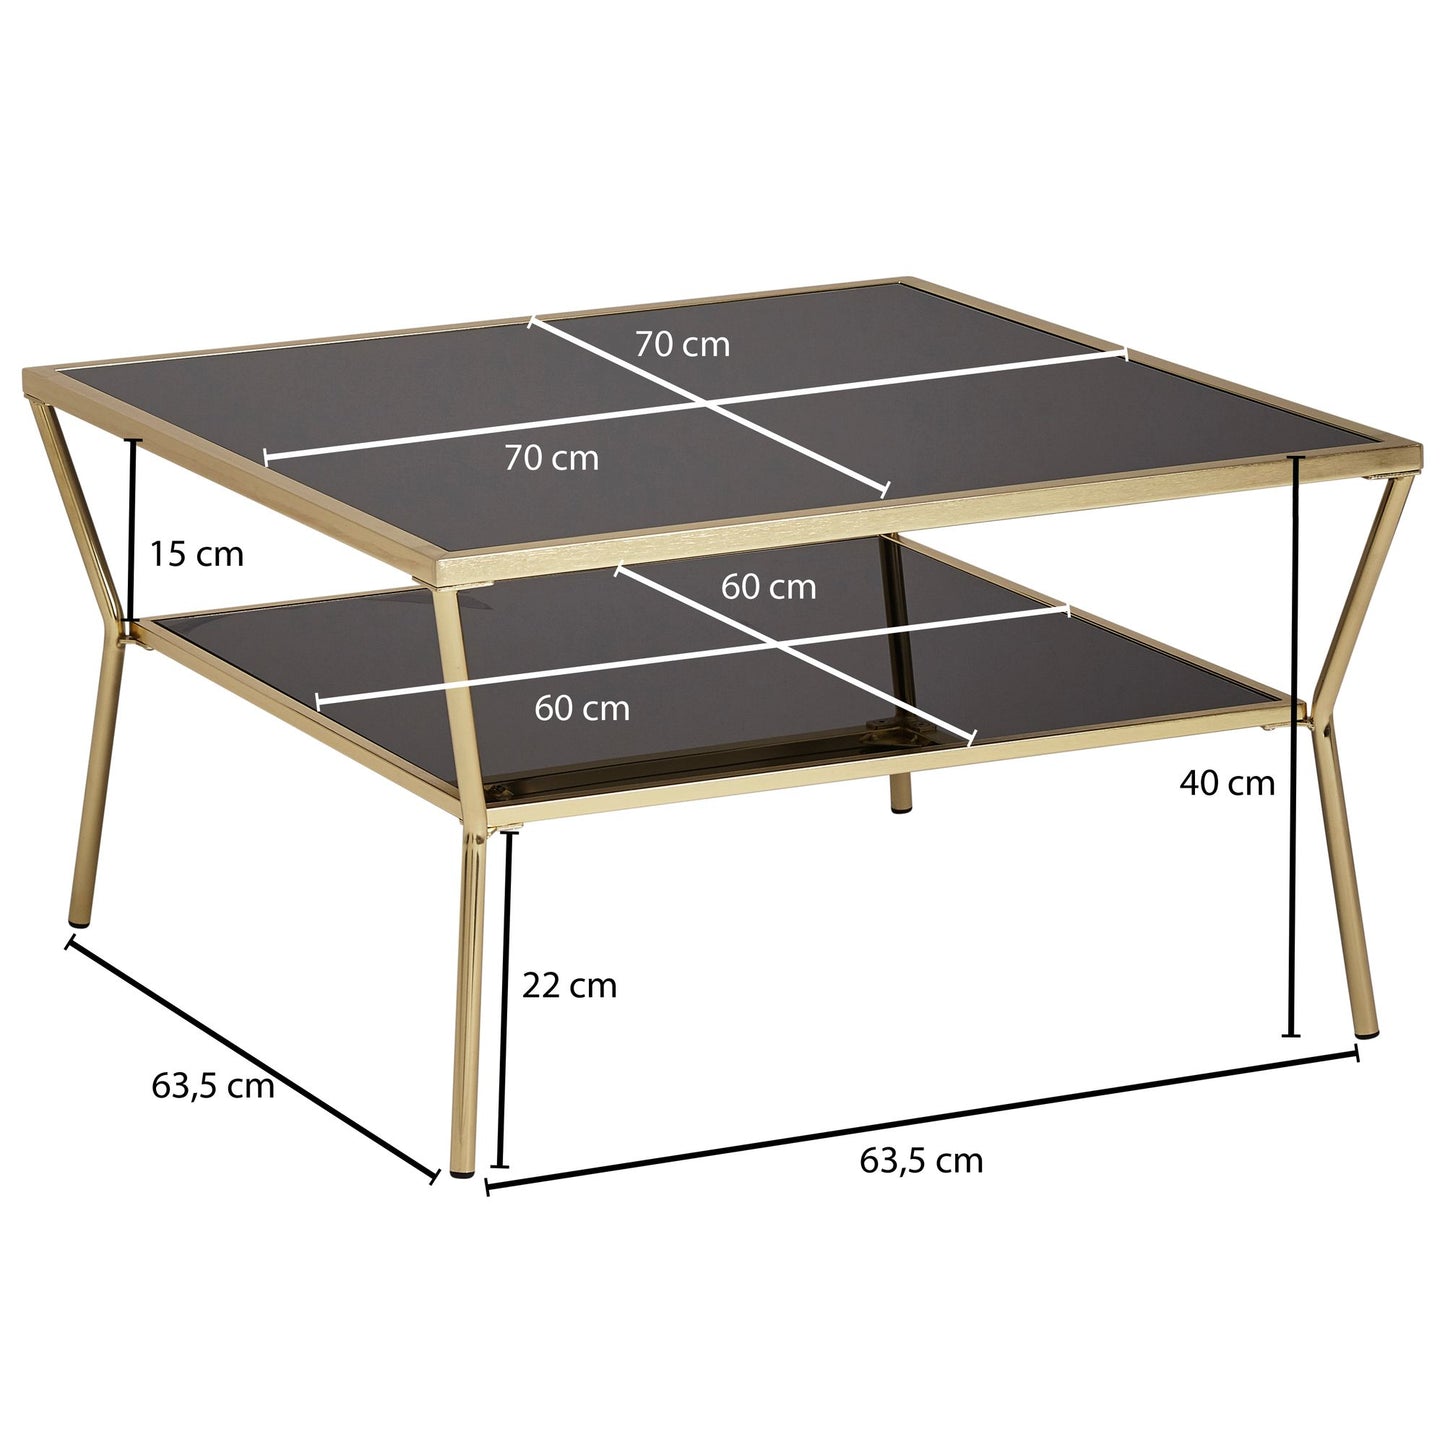 Design salontafel glas zwart 70 x 70 cm 2 niveaus goud metaal